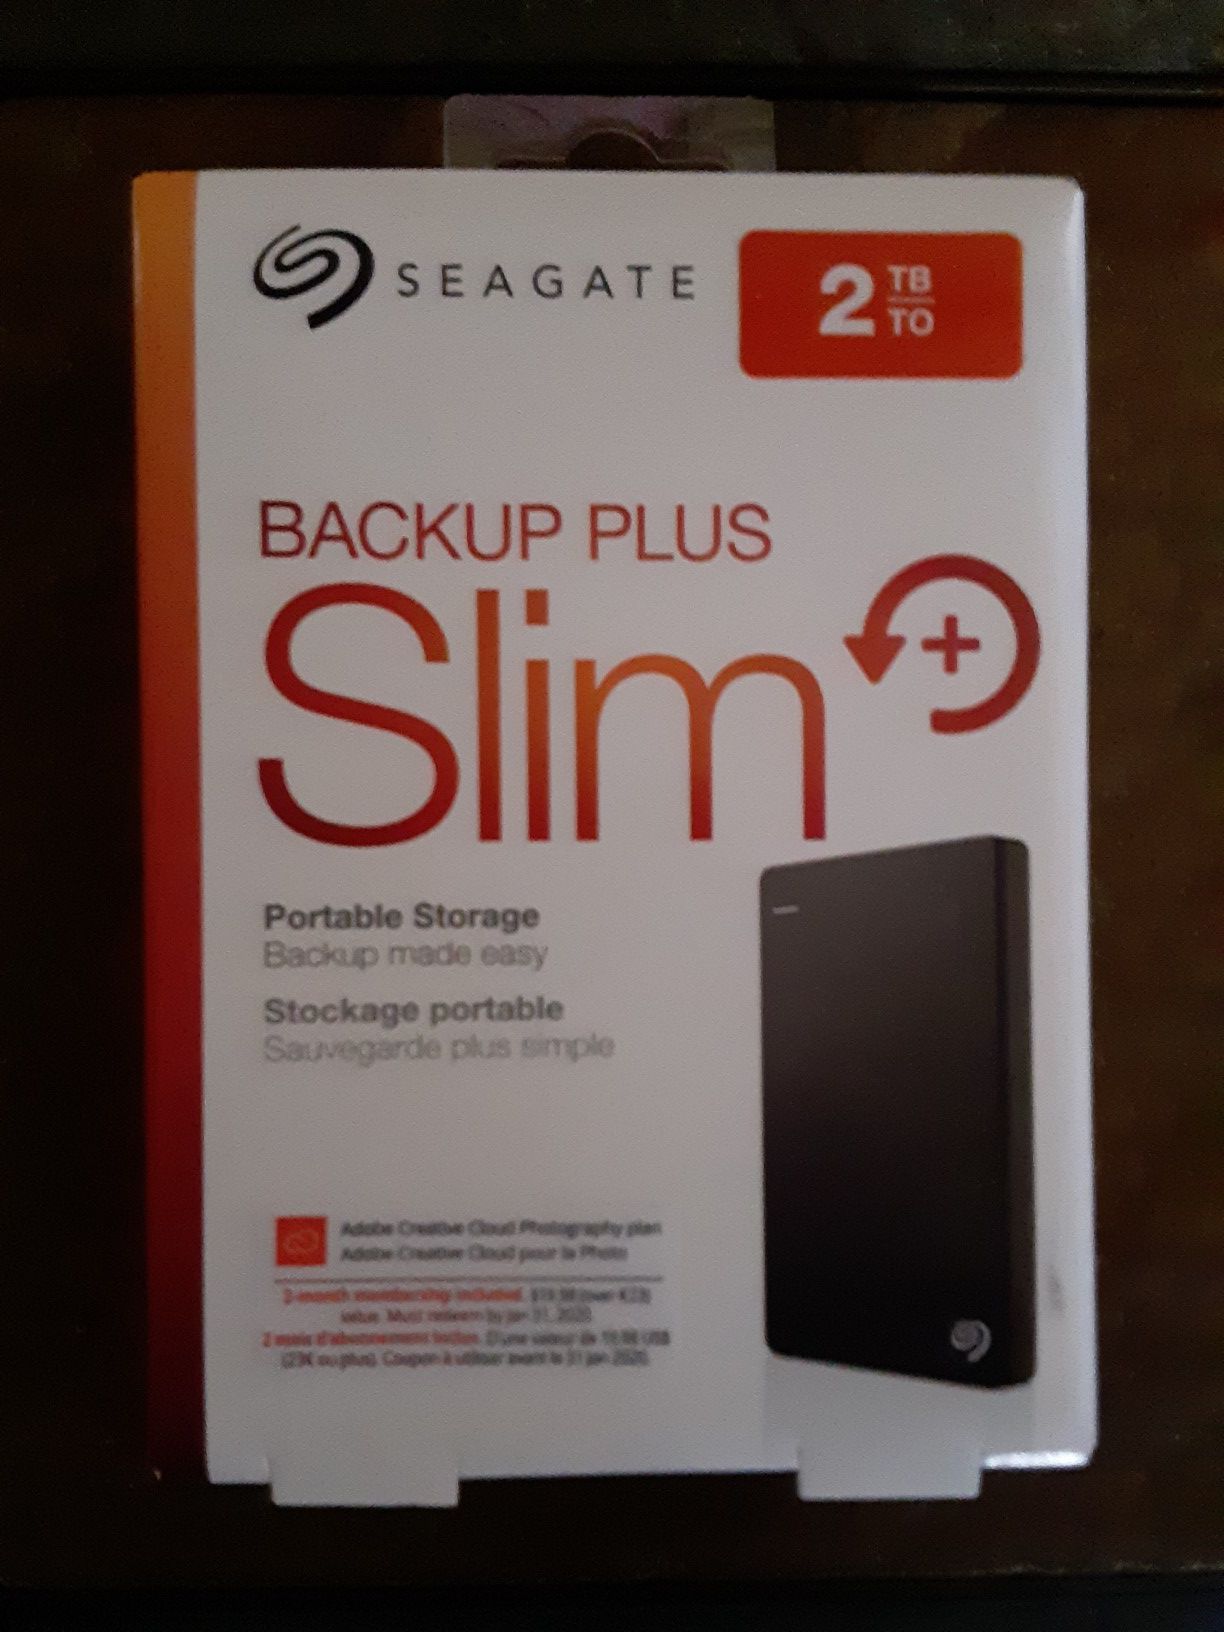 2TB backup slim plus portable hard drive